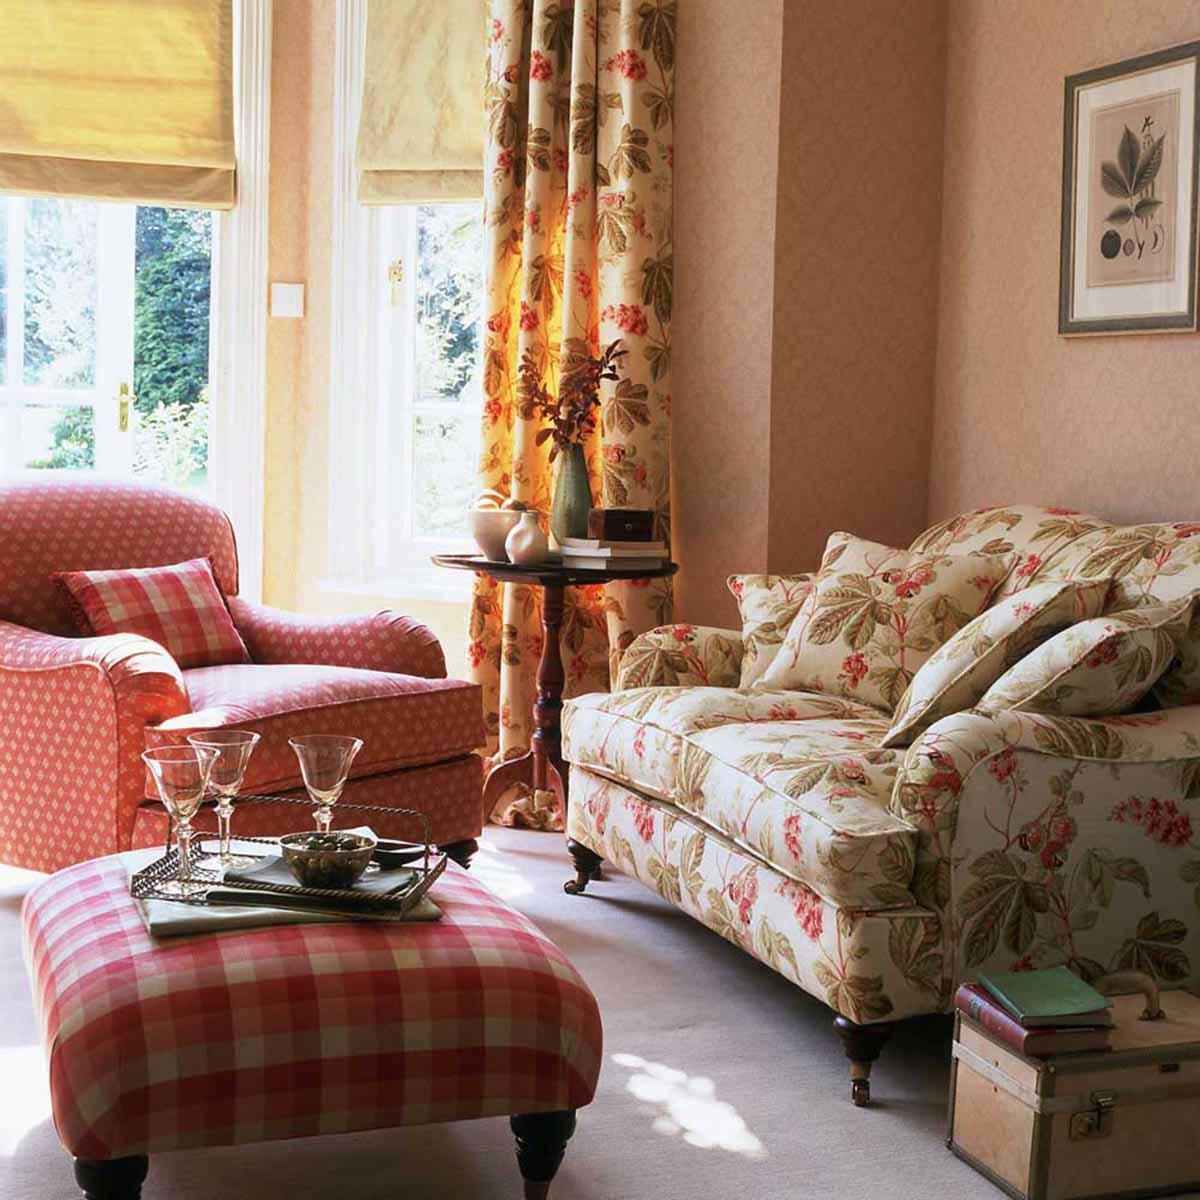 Phòng khách với sofa và gối hoạt tiết hoa nhẹ nhàng.

Nguồn: F&B Interior